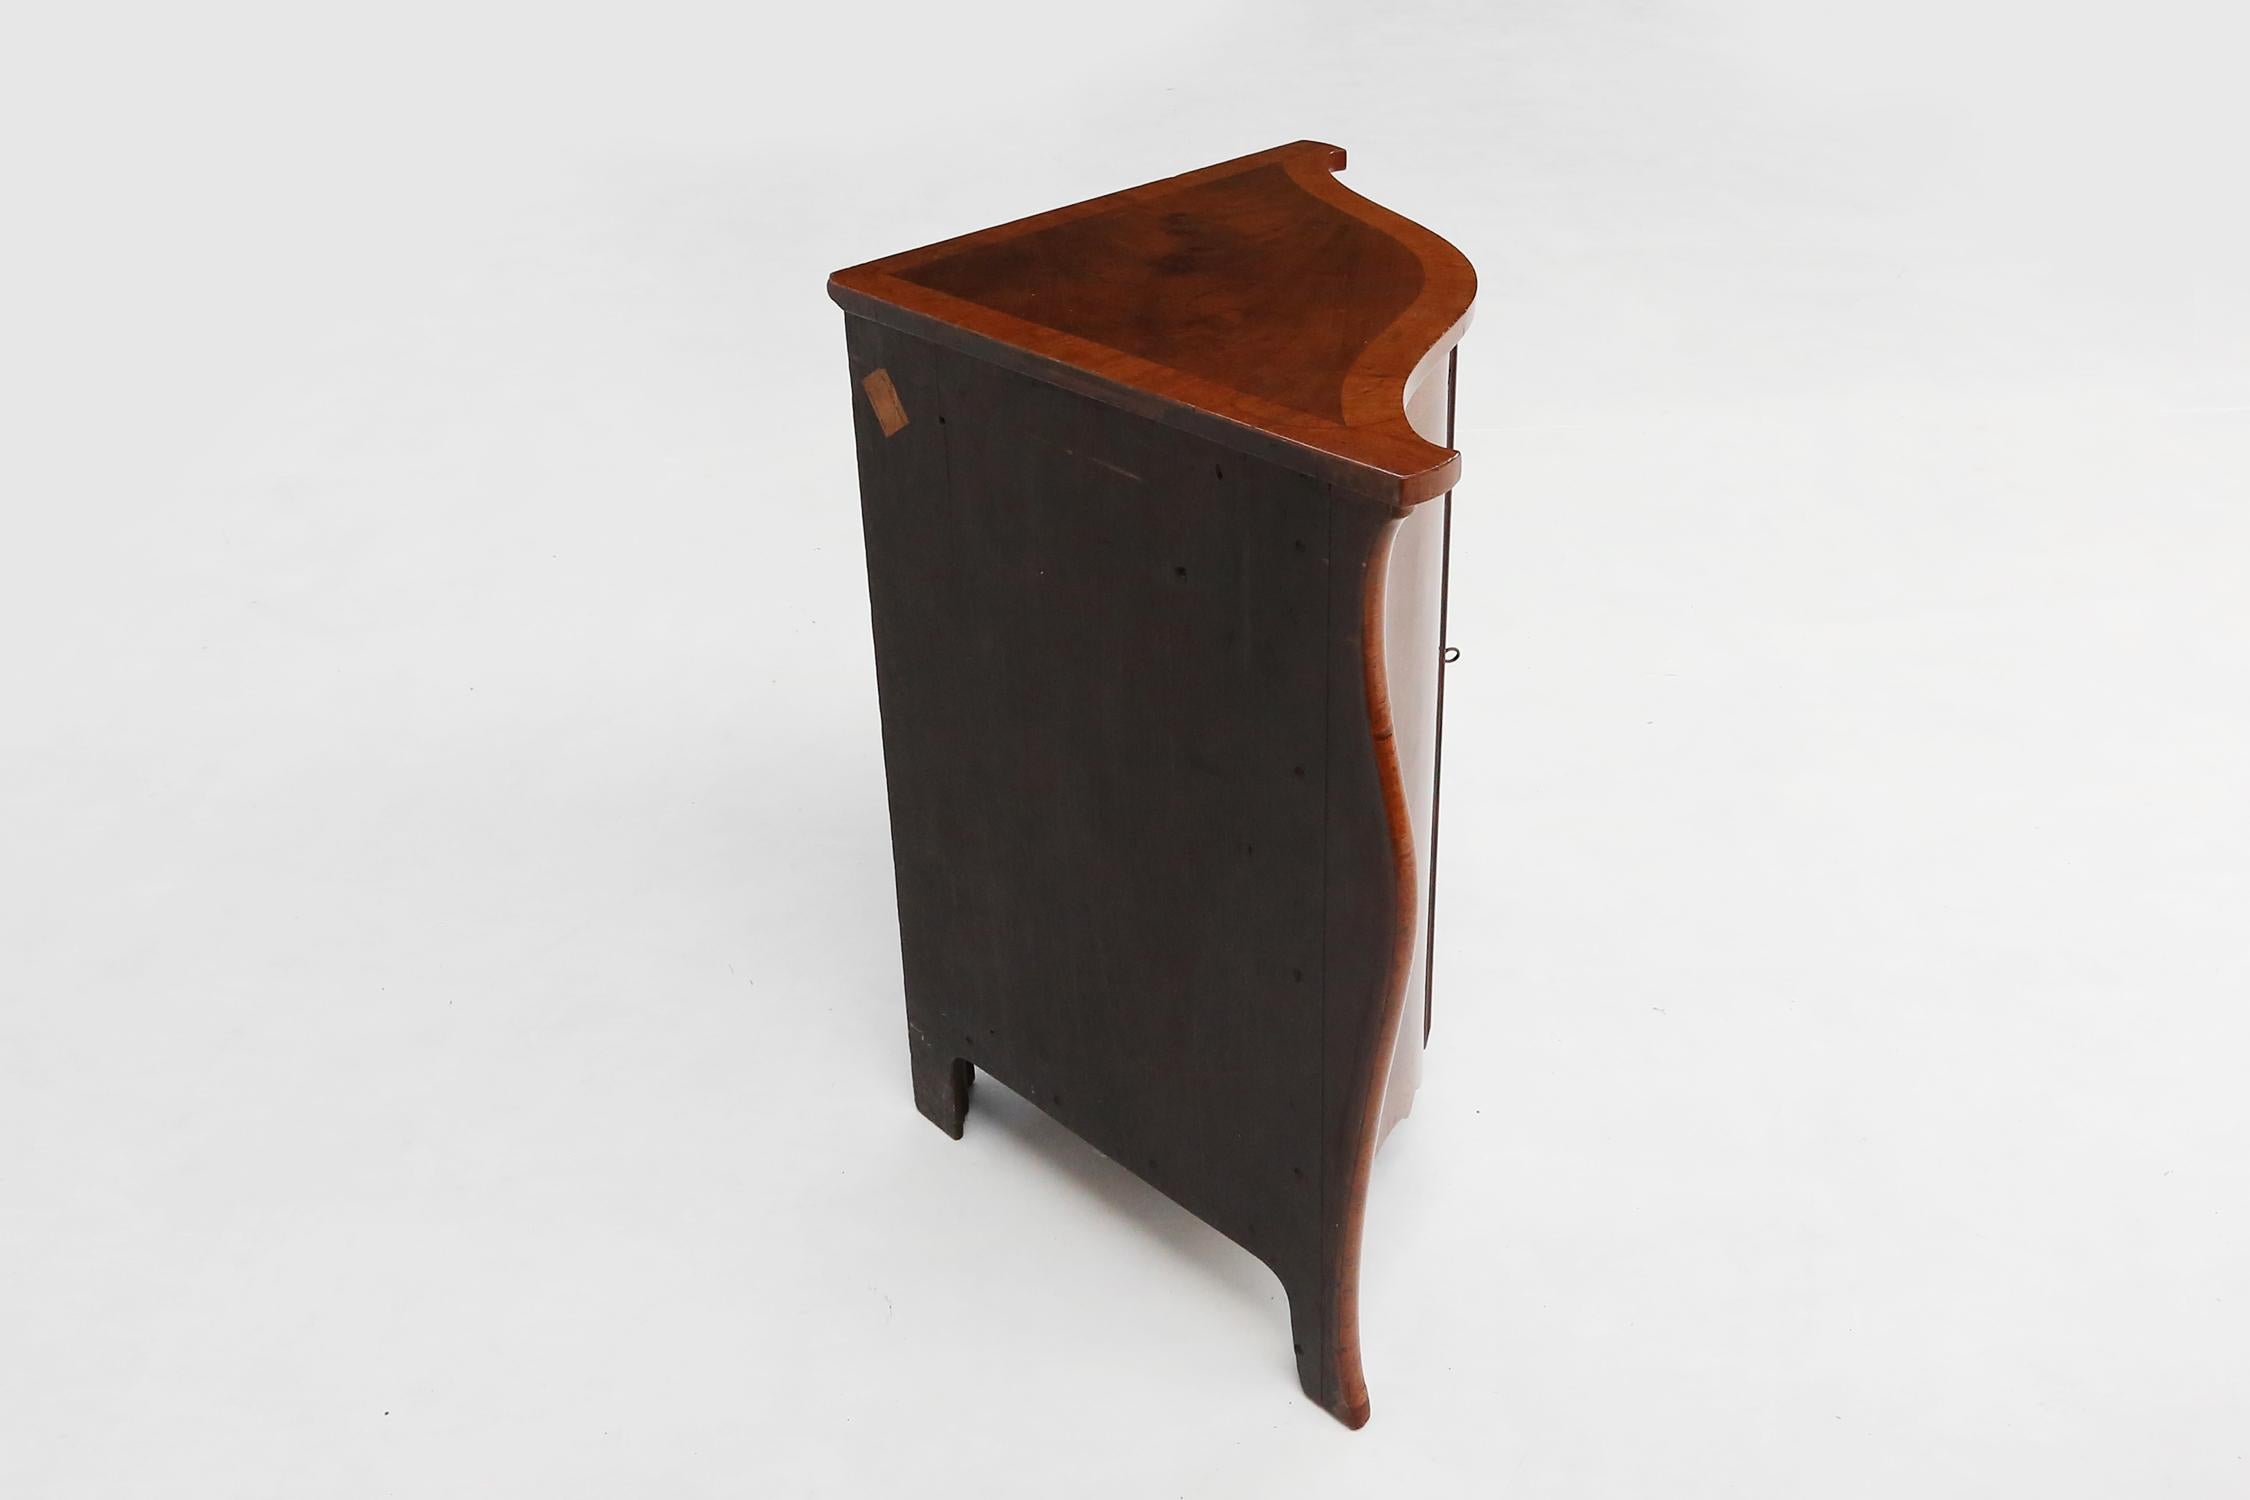 
Ce meuble d'angle est fabriqué en bois et présente une façade incurvée, ce qui lui confère un aspect élégant et charmant. Le meuble d'angle est doté de deux portes avec un trou de serrure au milieu, ce qui vous permet de ranger vos affaires en